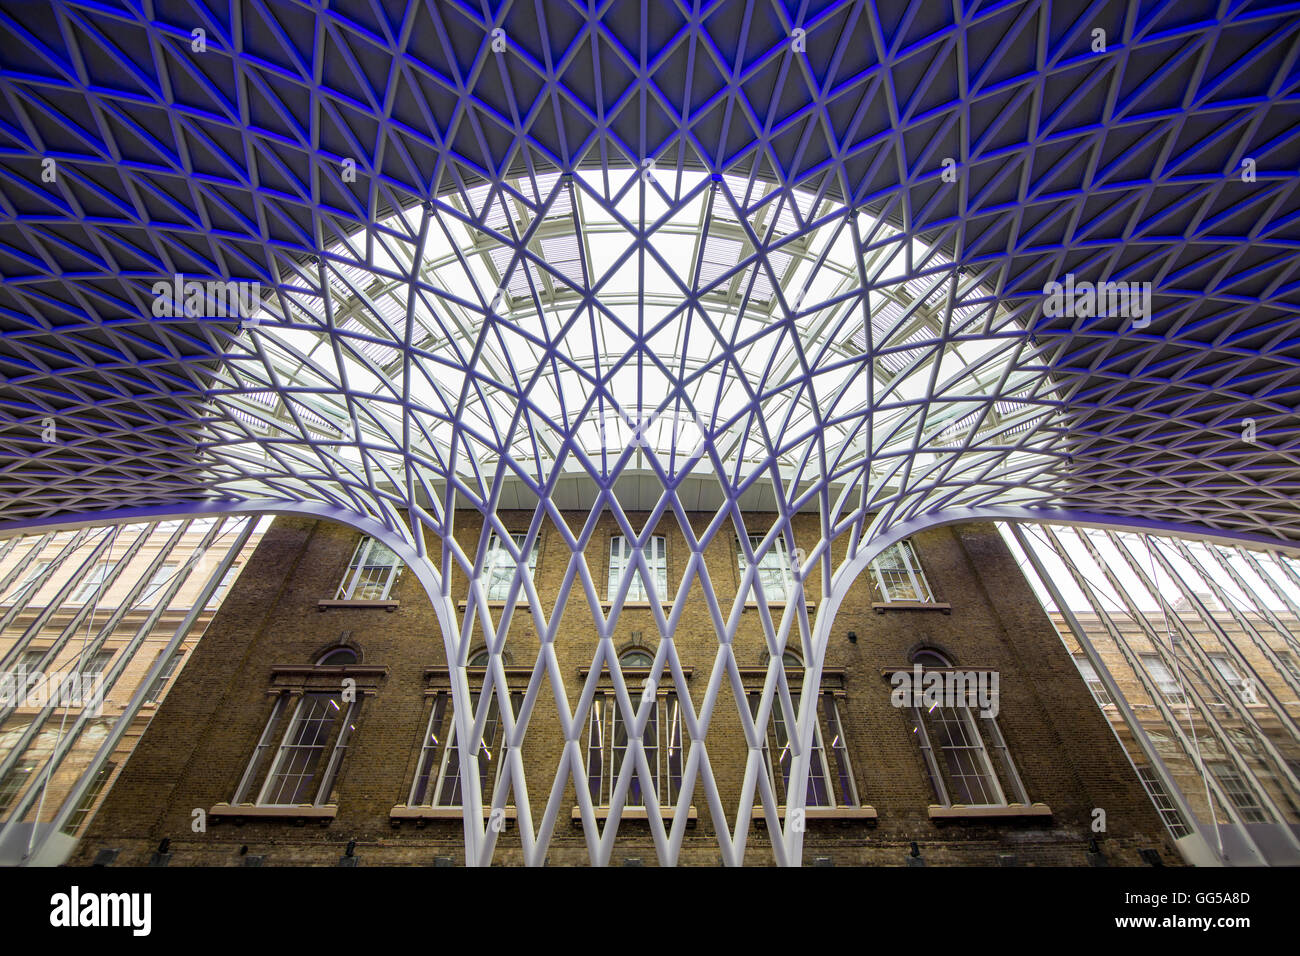 La gare de King's Cross, Londres, Angleterre, Royaume-Uni Banque D'Images